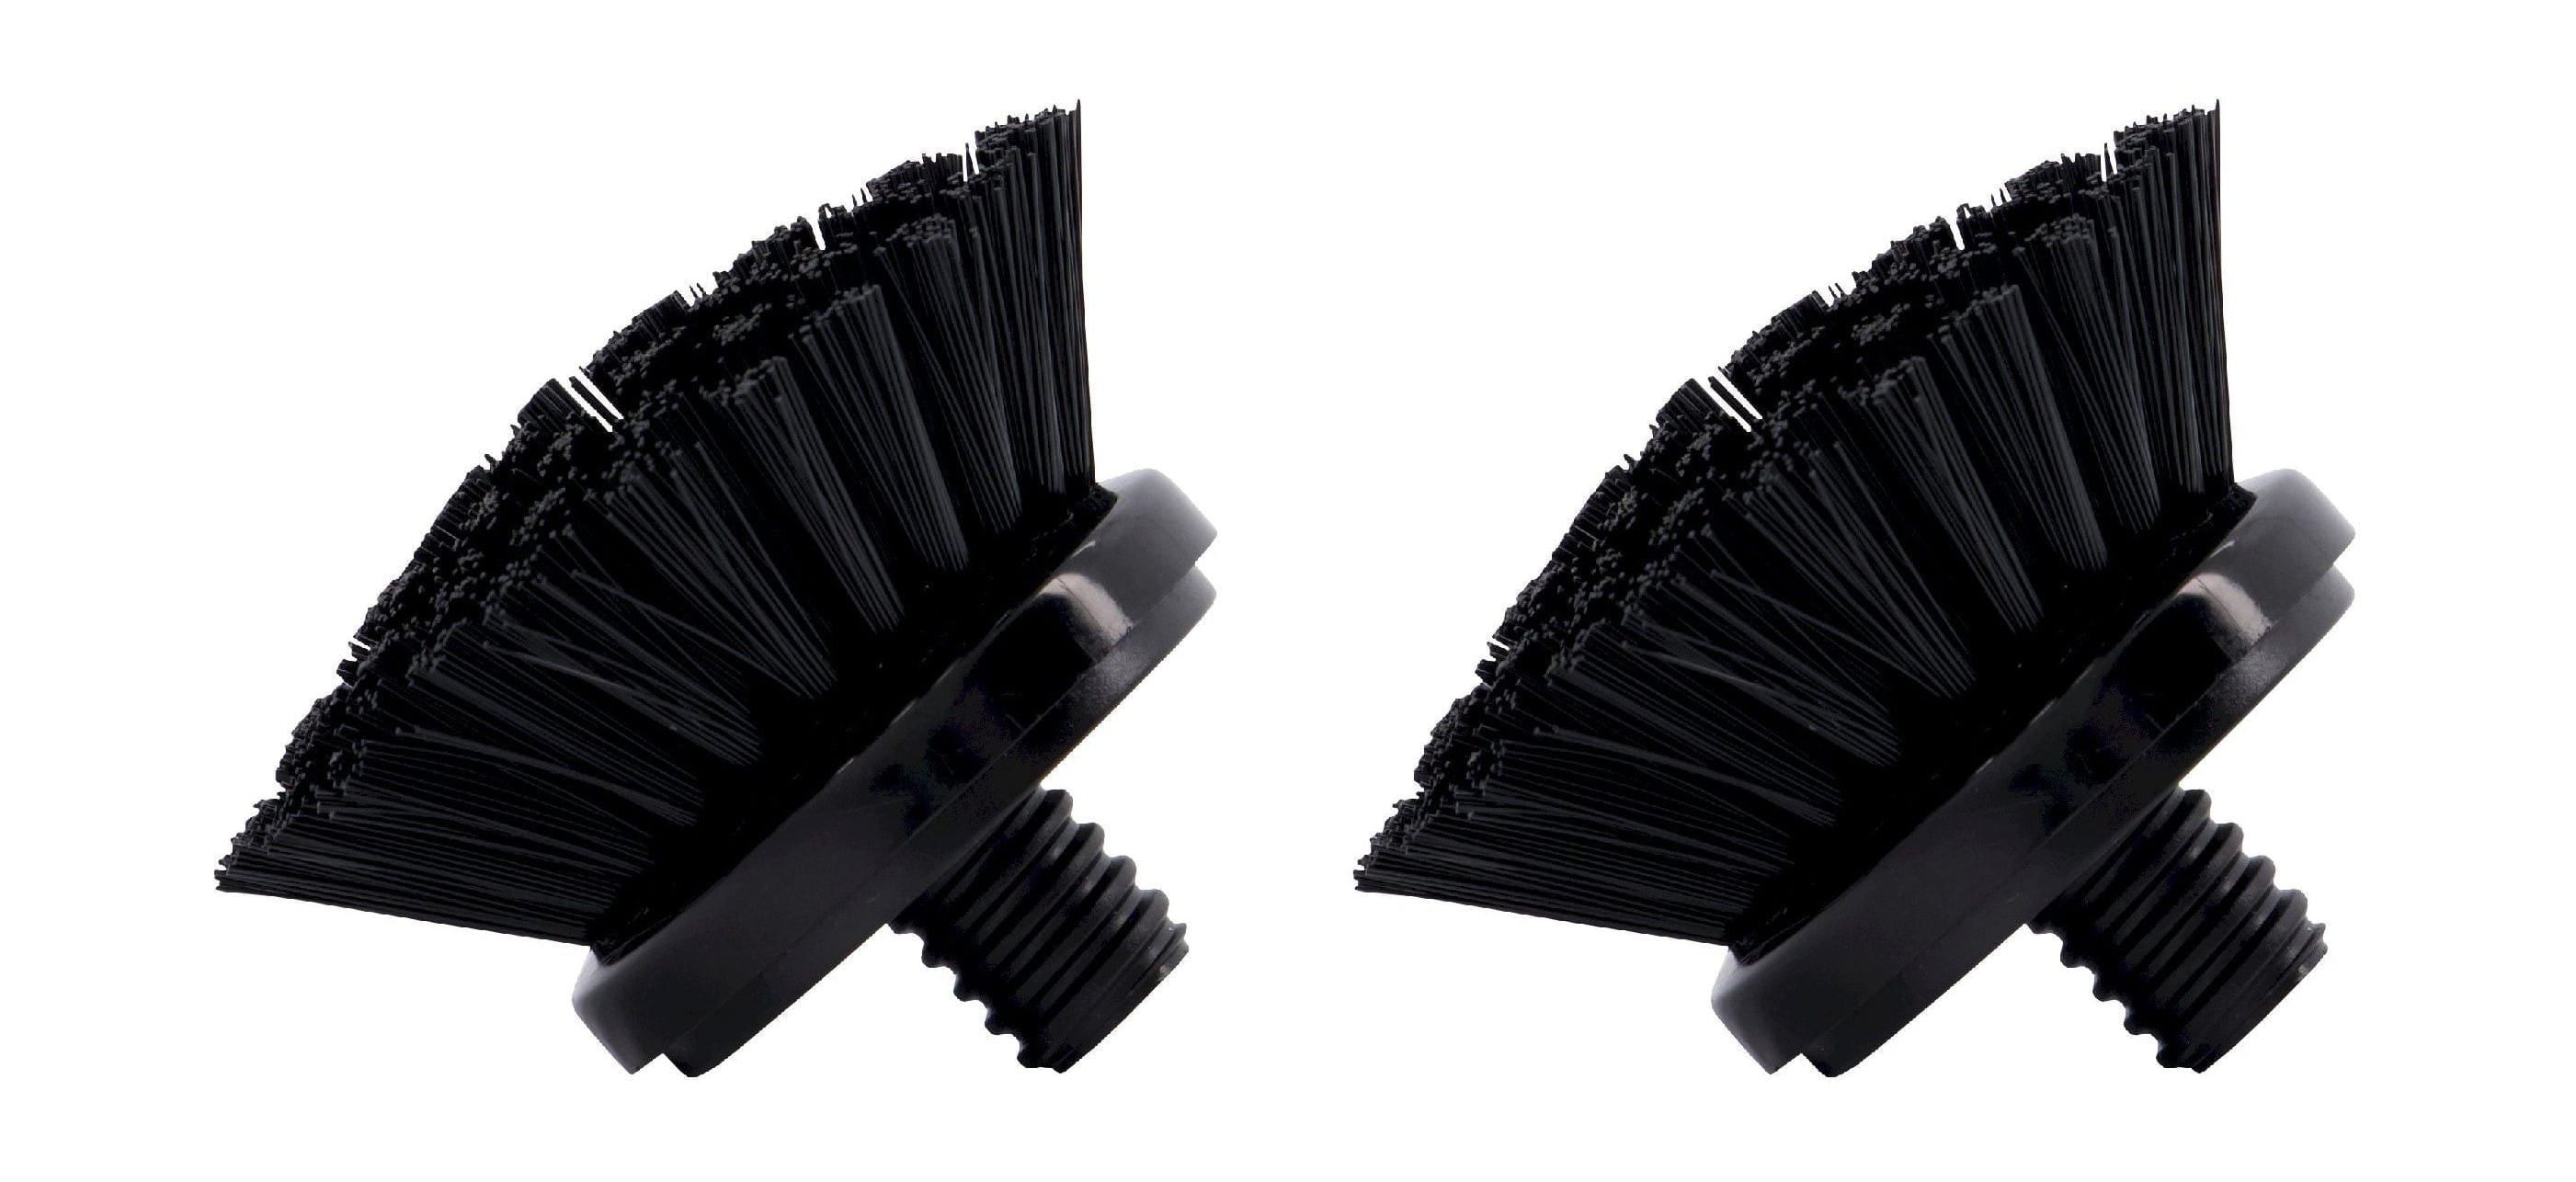 Cabezales de cepillo de reemplazo de Meraki Juego de 2, negro